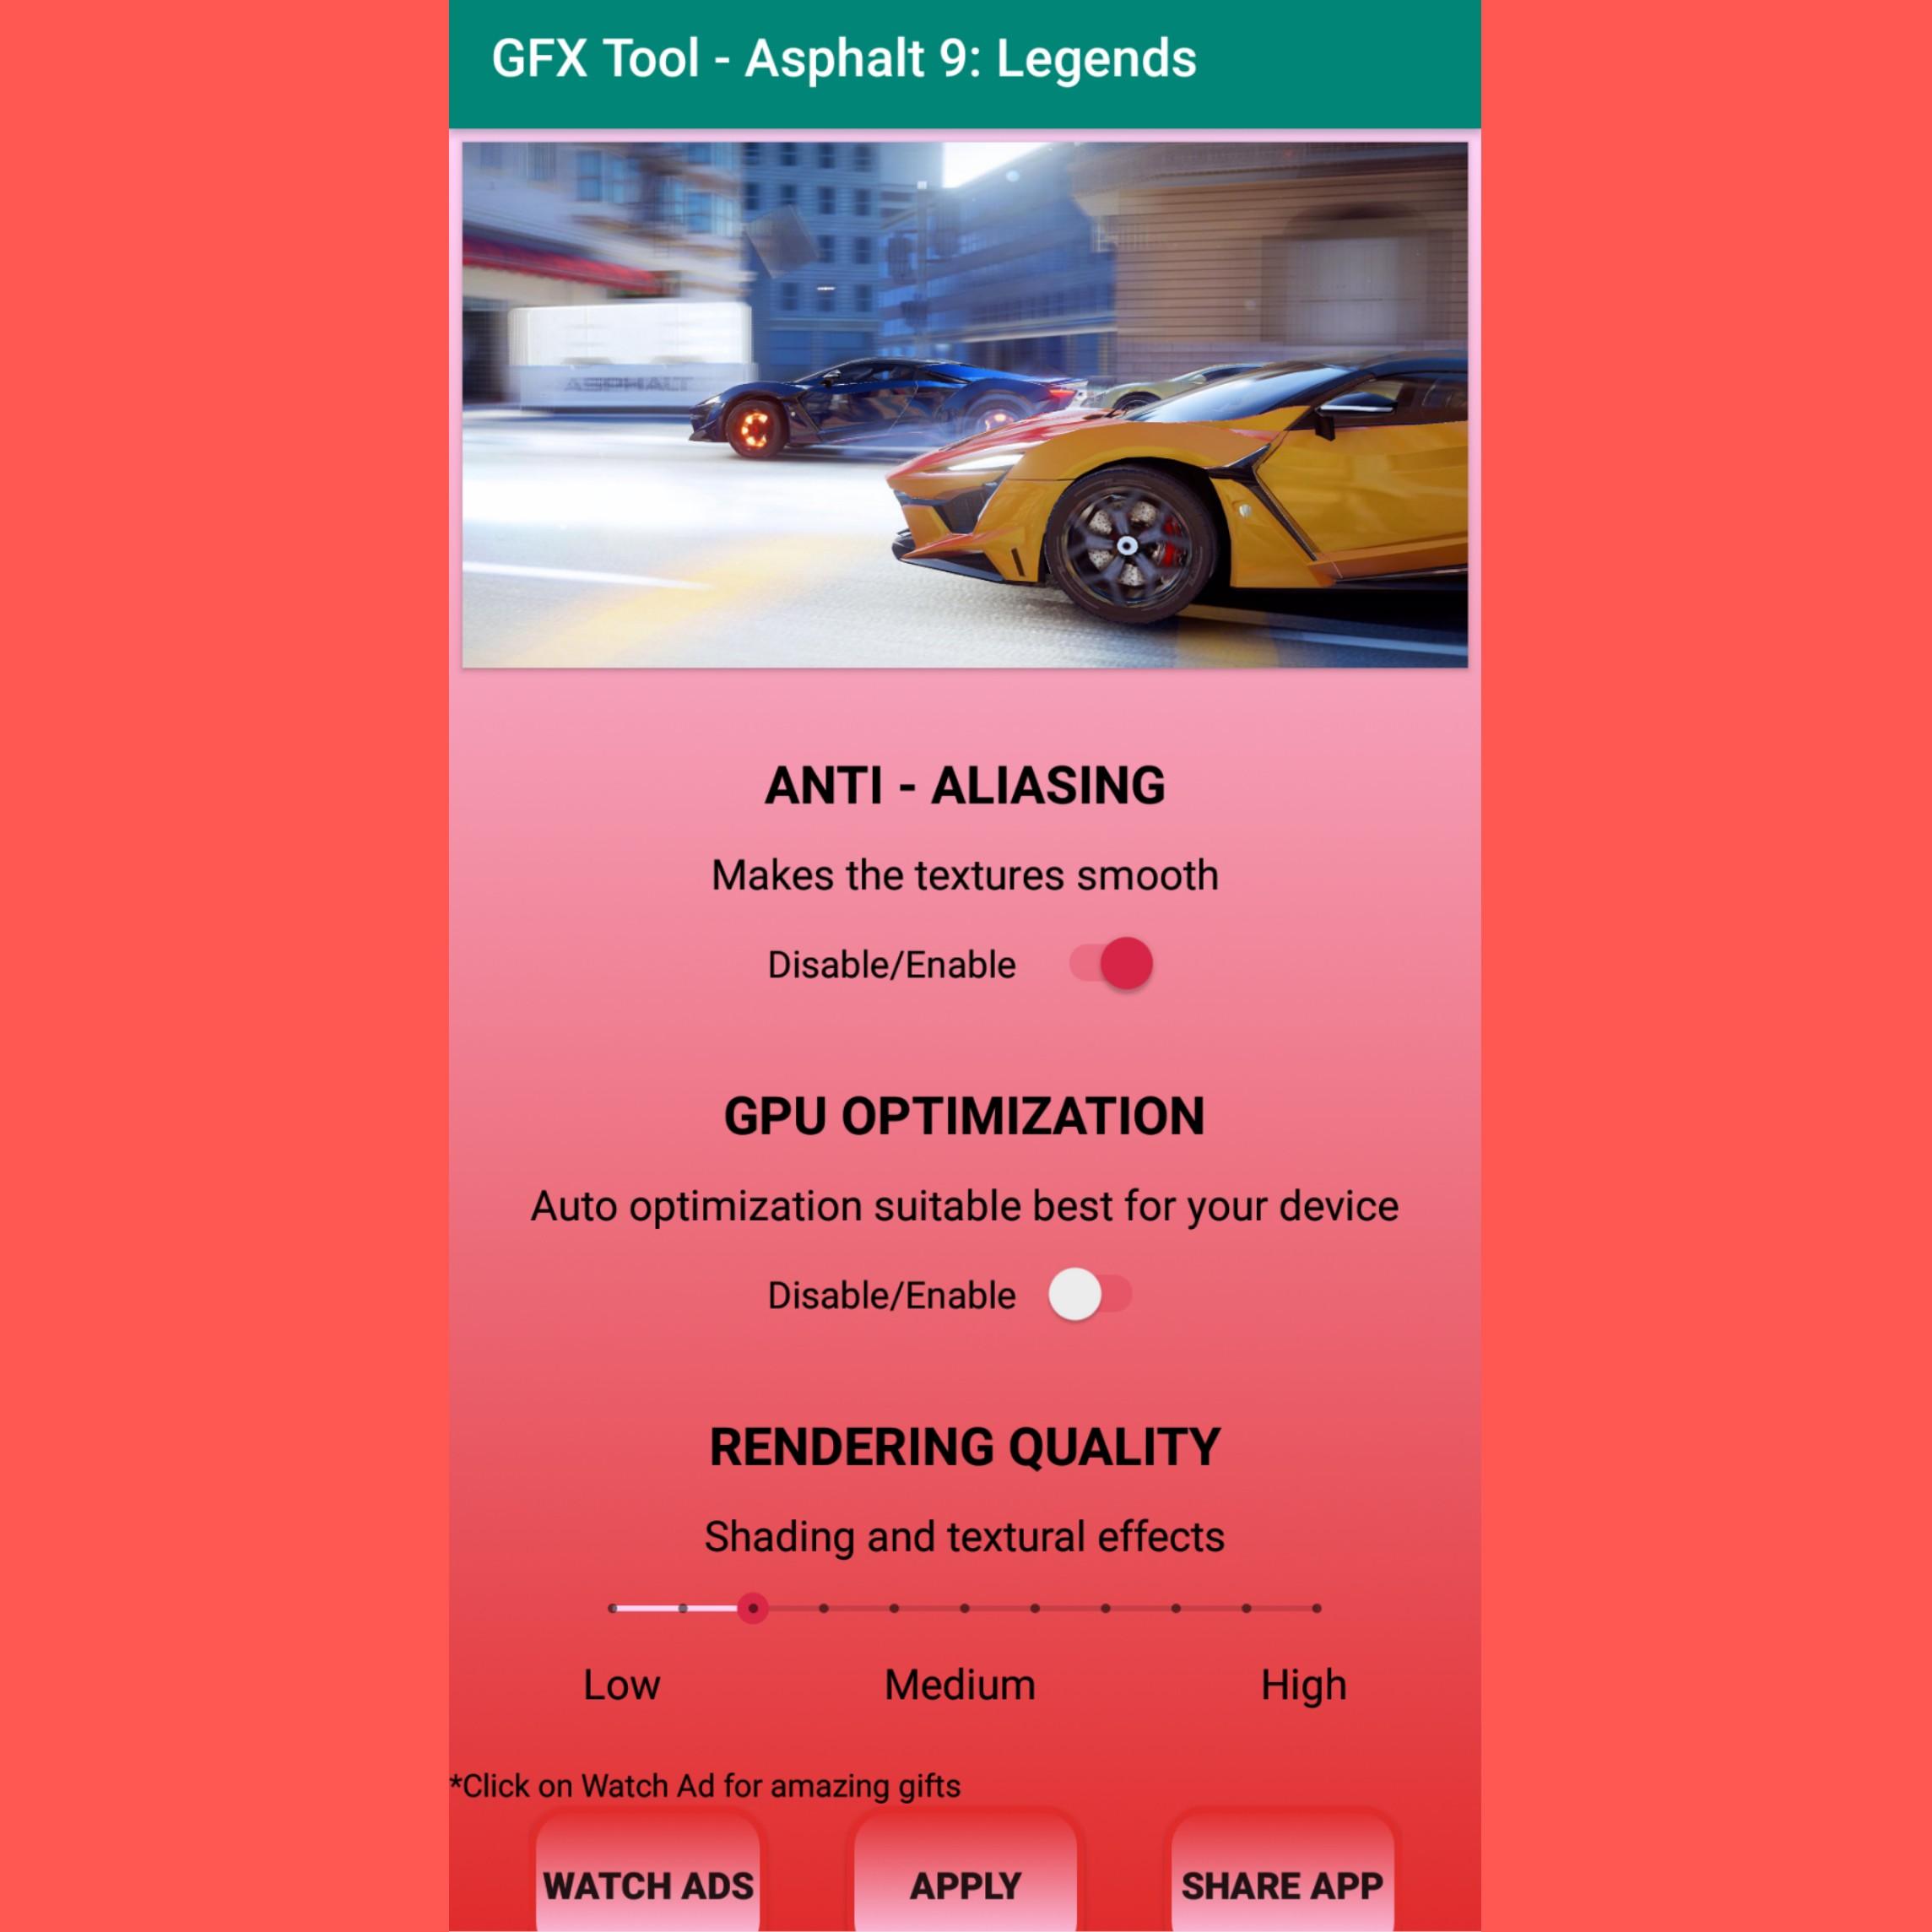 GFX Tool for Asphalt 9 Legends for Android - APK Download - 